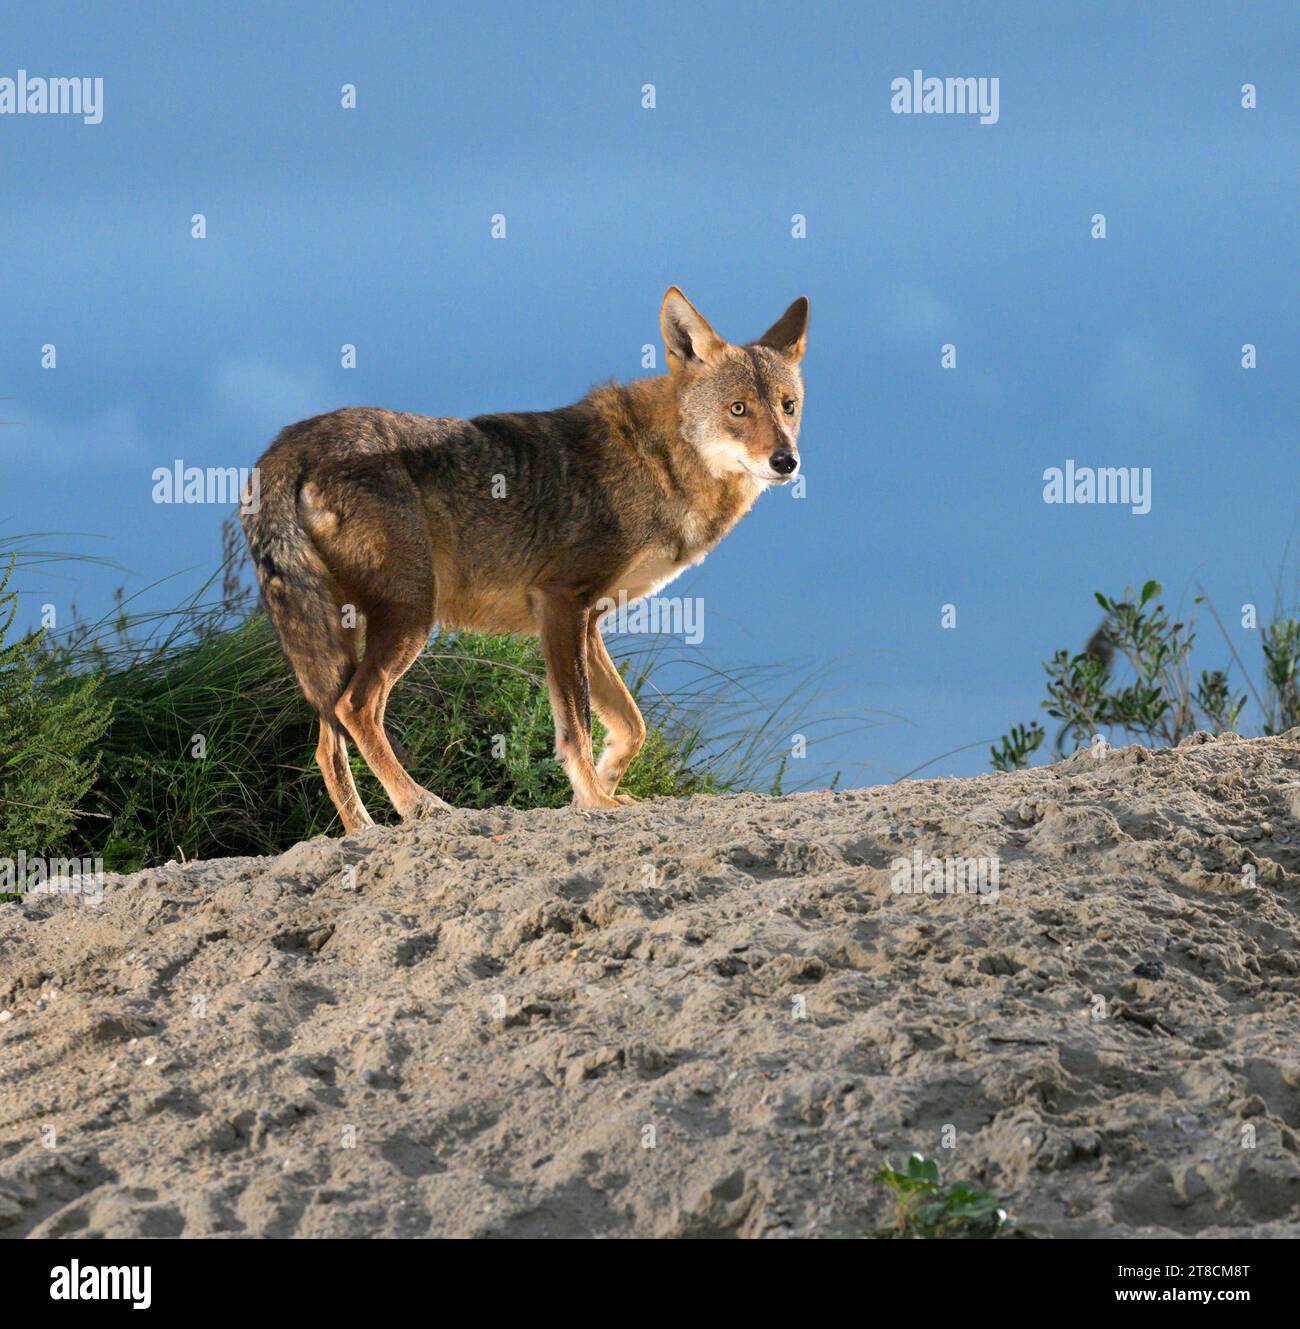 Kojote (Canis latrans) auf der Sanddüne bei Sonnenuntergang, Galveston, Texas, USA. Es wird angenommen, dass diese Kojotenpopulation Gene des Roten Wolfs (Canis rufus) besitzt. Stockfoto